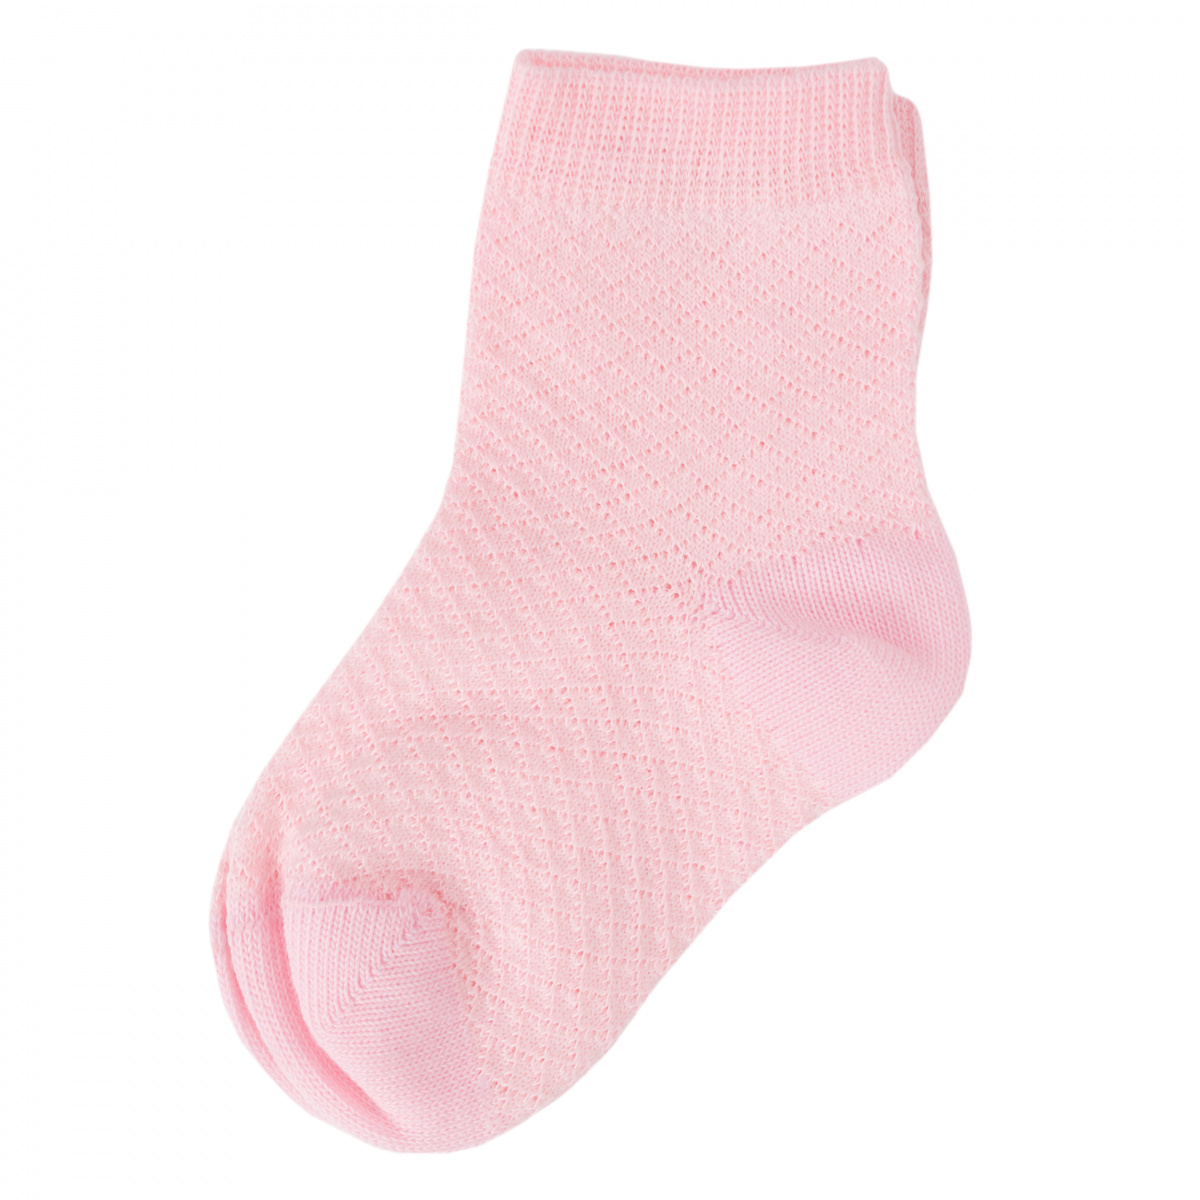 Носки PLAYTODAY комплект из 2 пар. Бело розовые носки. Розовые носки на белом фоне. Комплект детских носочков розовые и белые. Розово белые носки